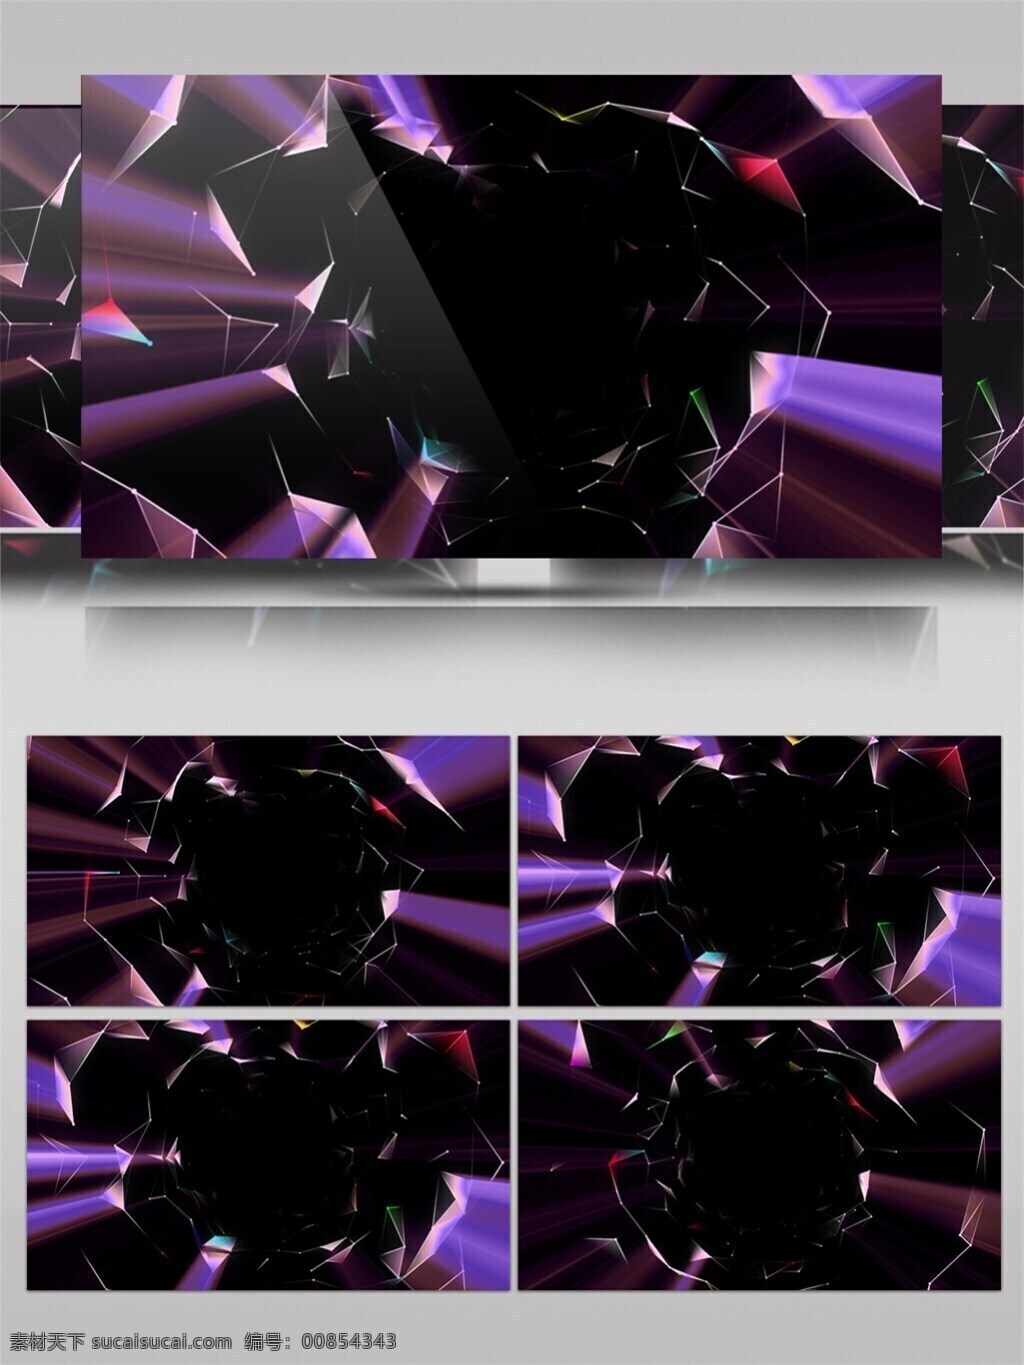 紫色 星座 图 通道 视频 紫色光束 星座图 大气 视频素材 动态视频素材